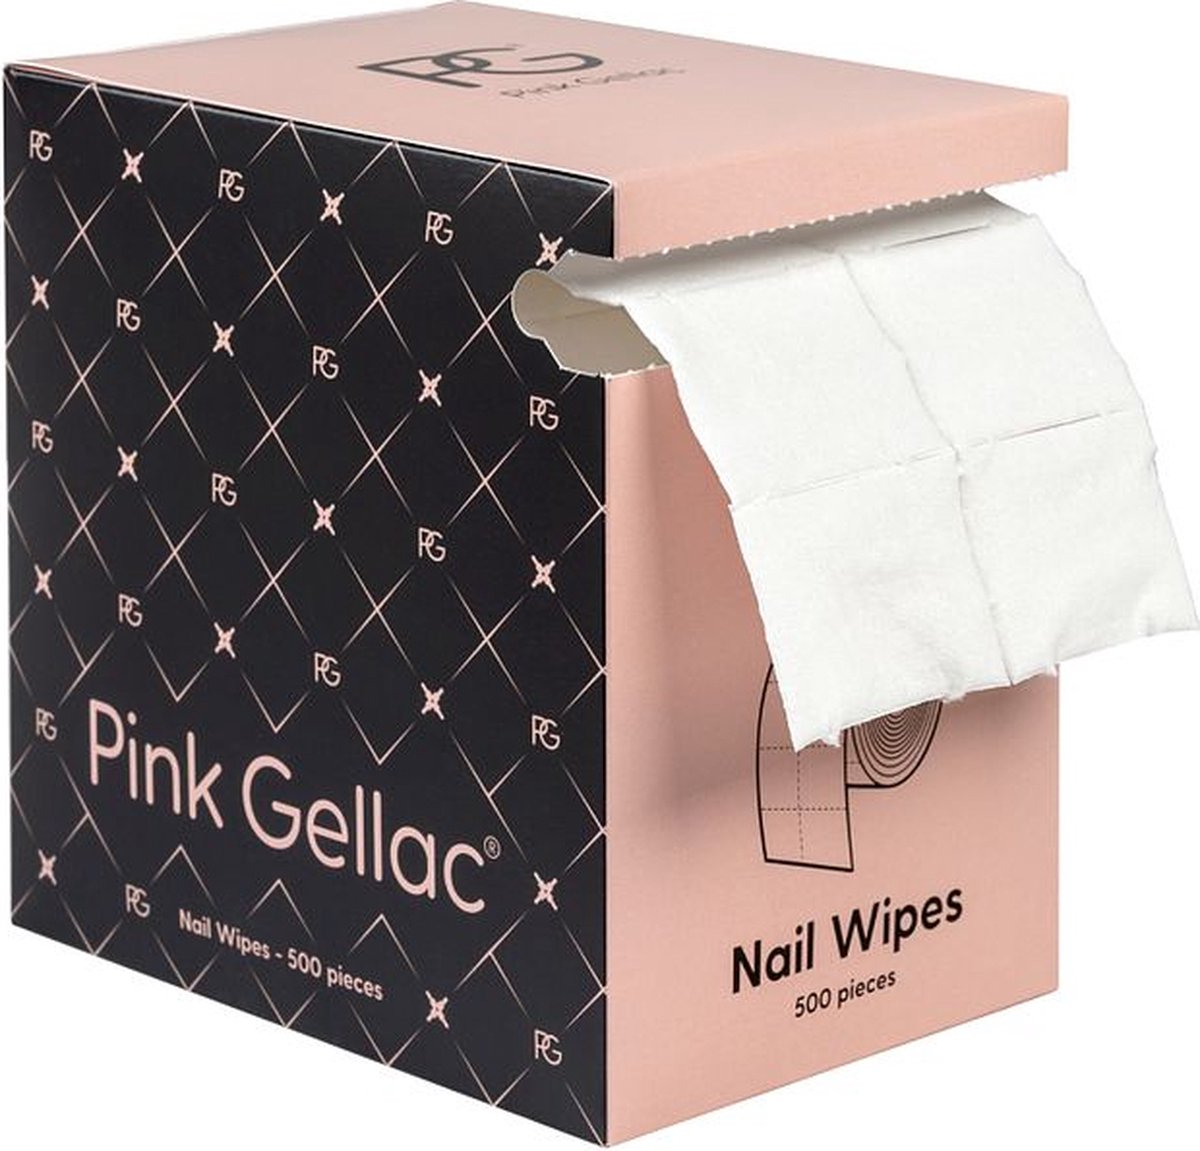 Pink Gellac Nail Wipes - Gellak reiniger - 500 stuks - Zacht voor nagels - Pink Gellac